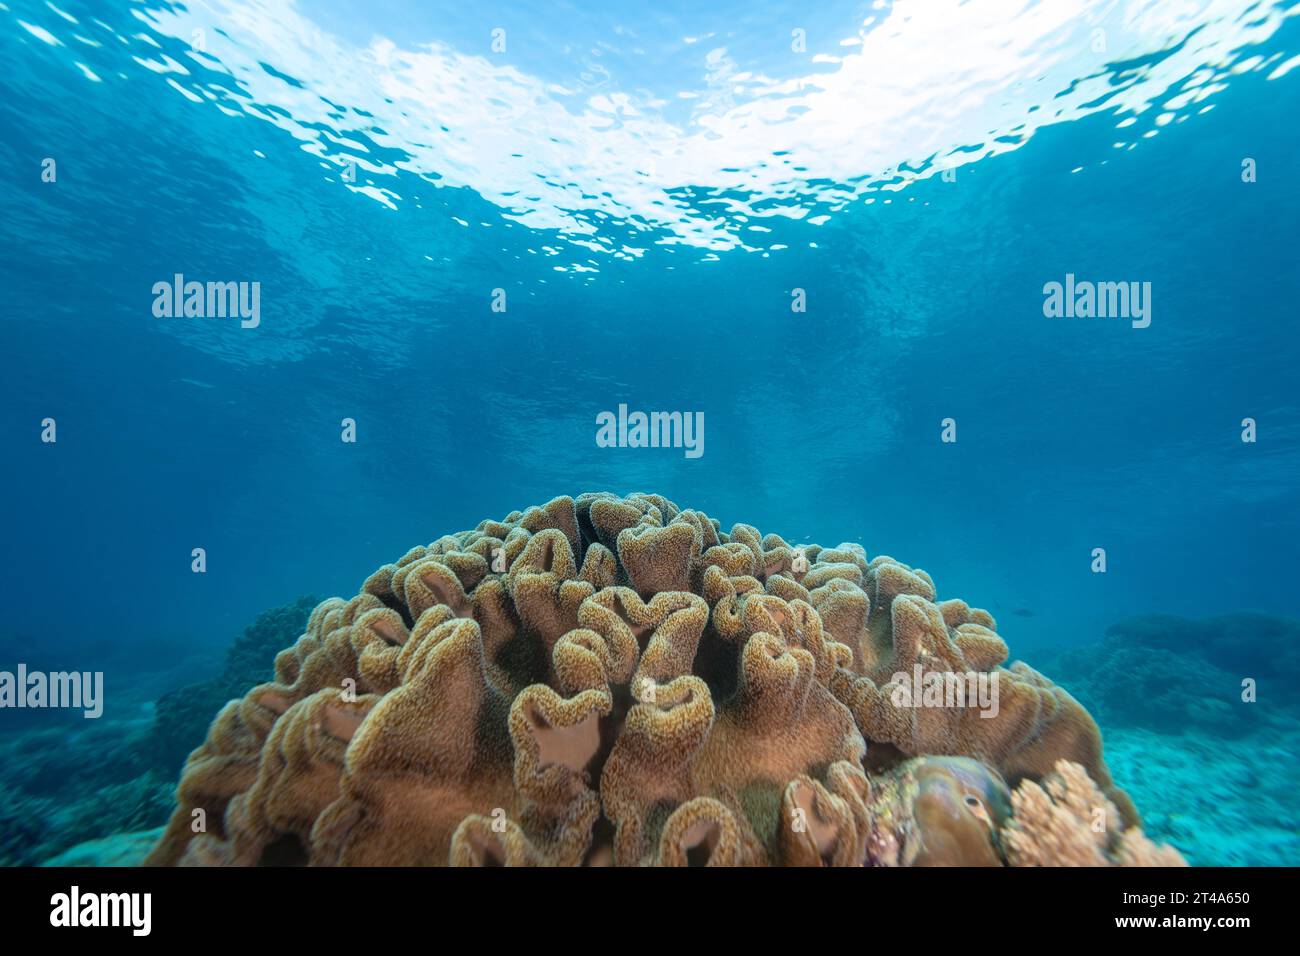 Grande pelle, Sinularia, testa di corallo circondata dalle acque cristalline e tropicali di una barriera corallina Foto Stock